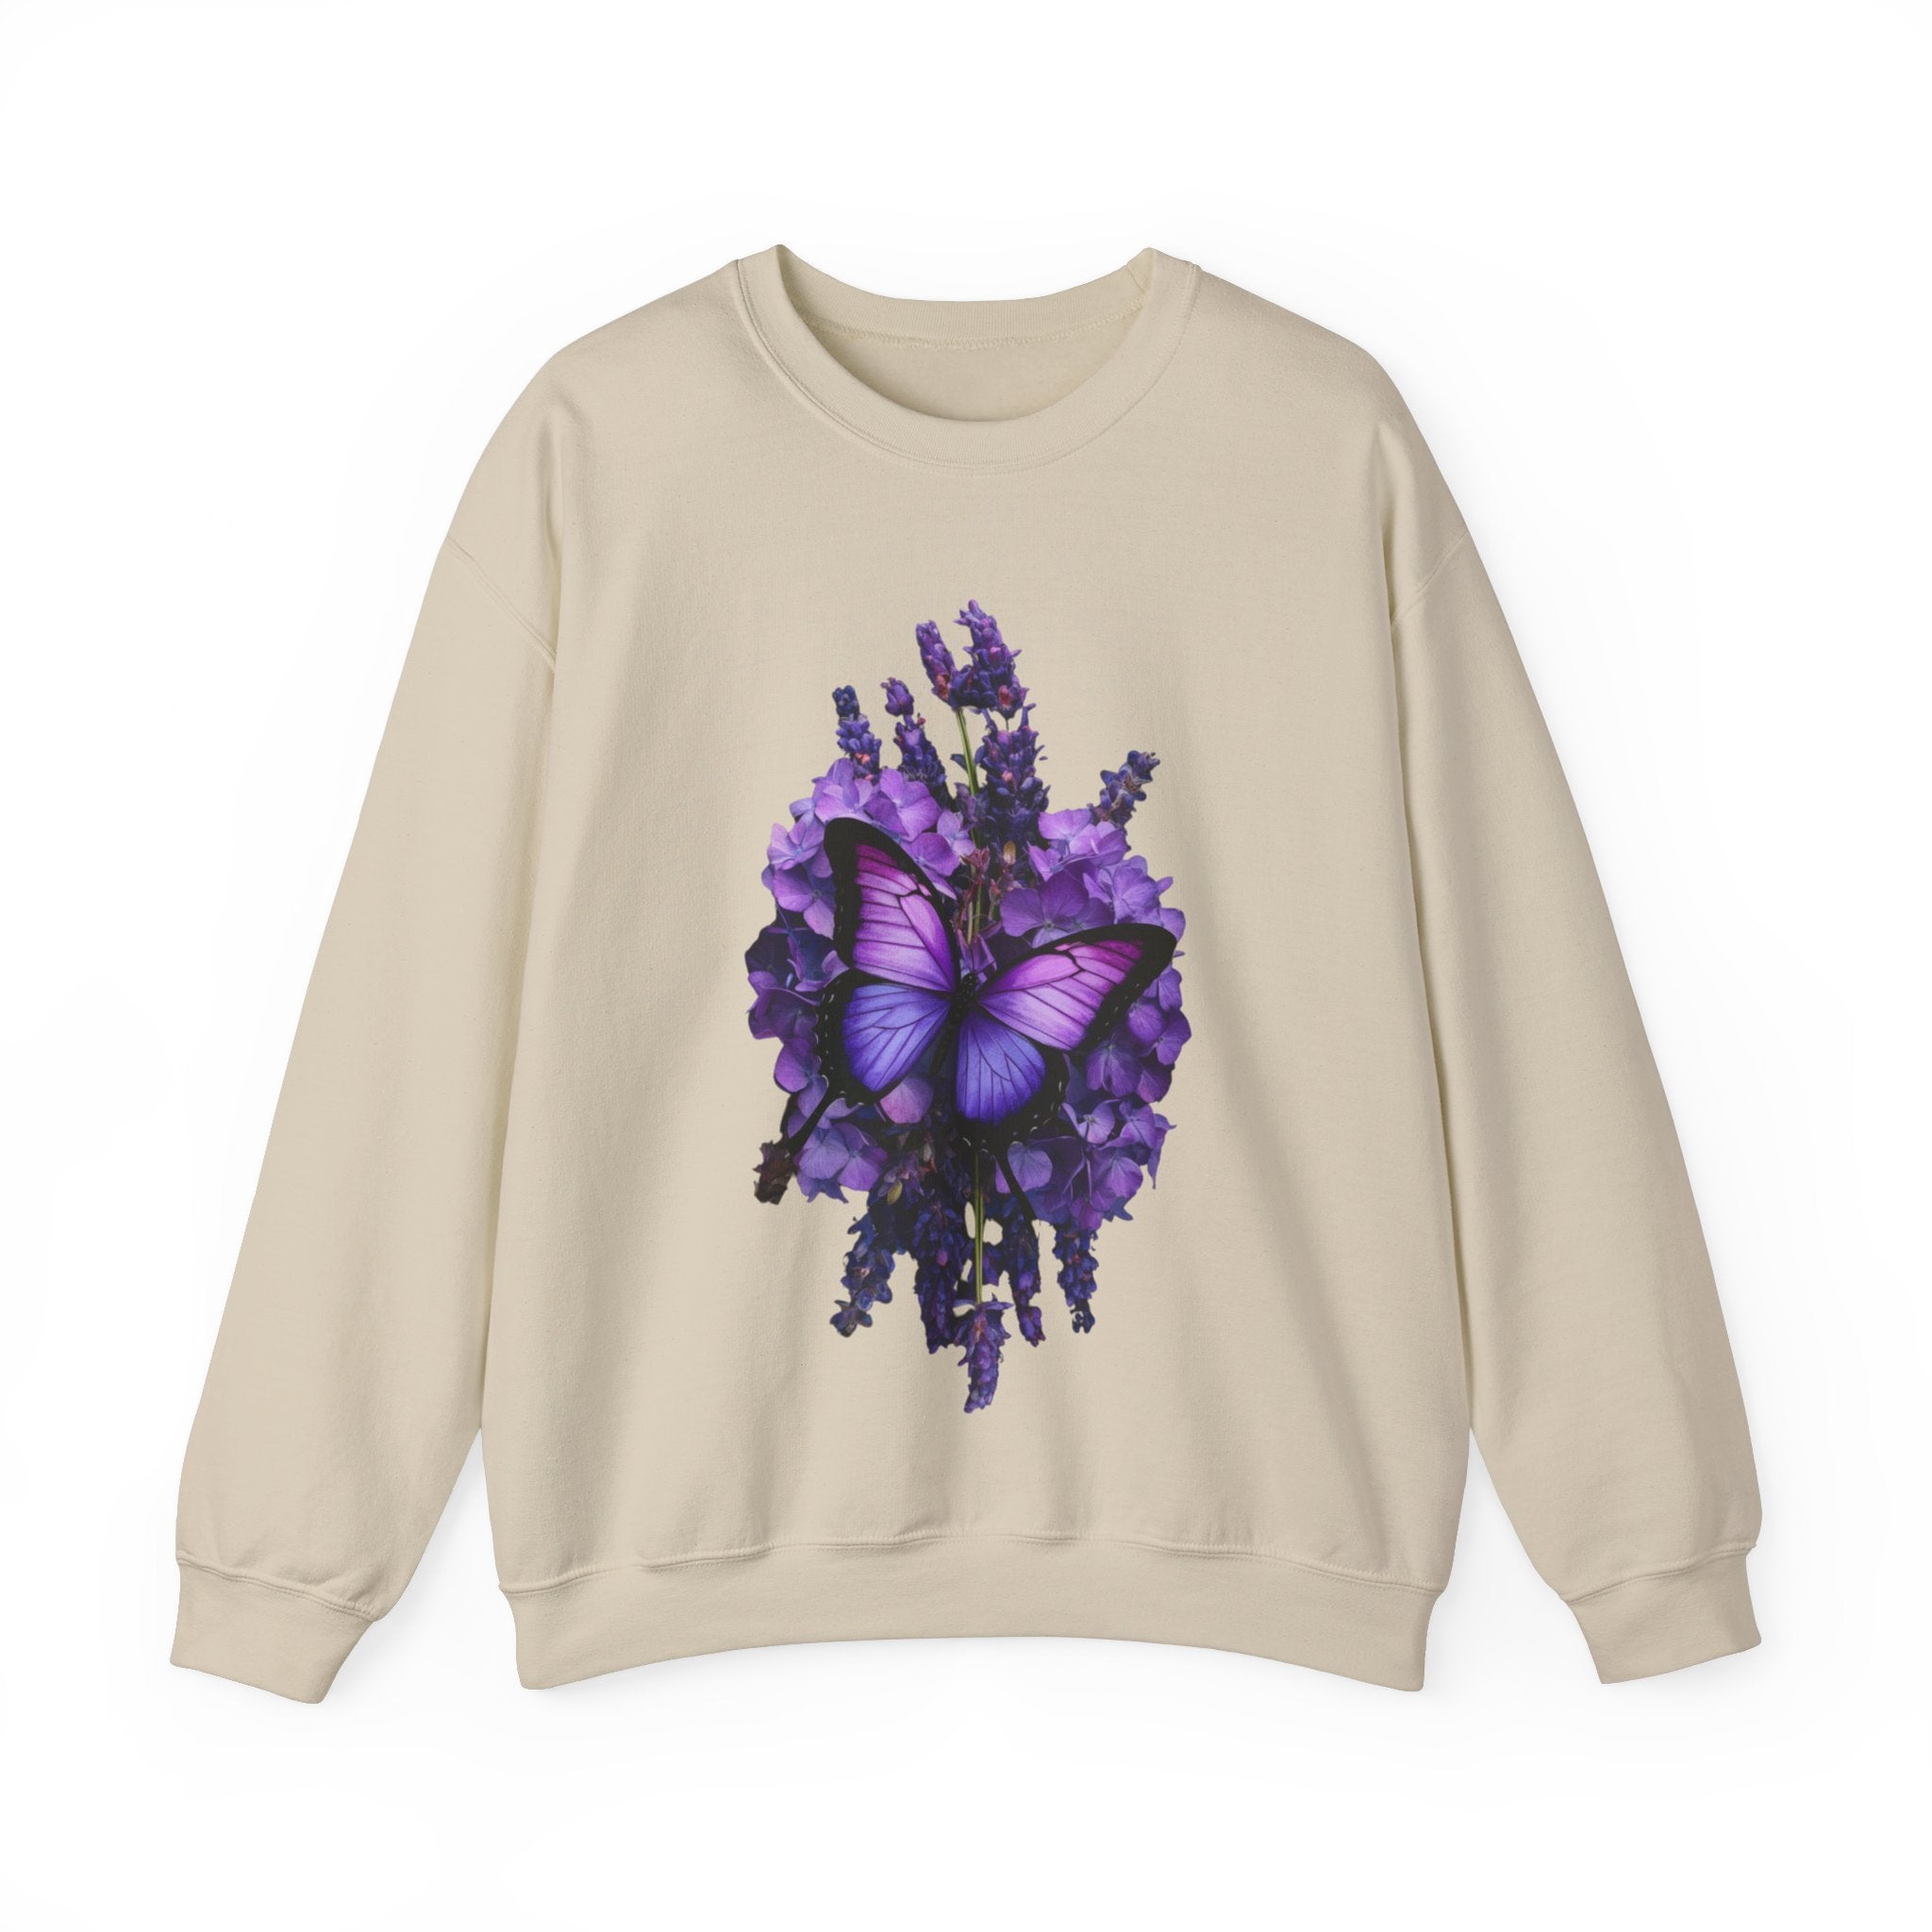 Butterfly Nest Sweatshirt